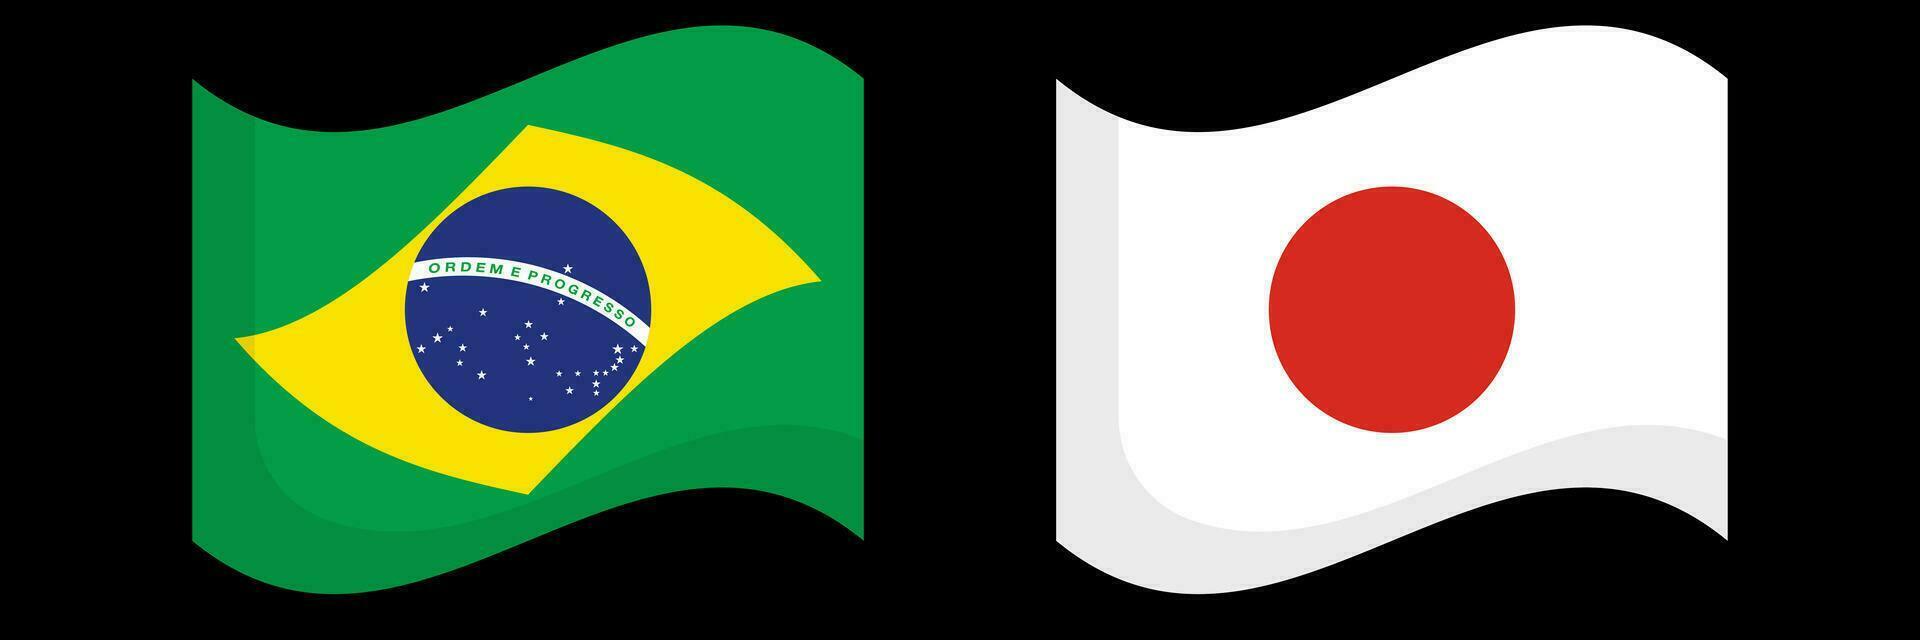 platt design fladdrande brasiliansk och japansk flaggor ikon uppsättning. vektor. vektor